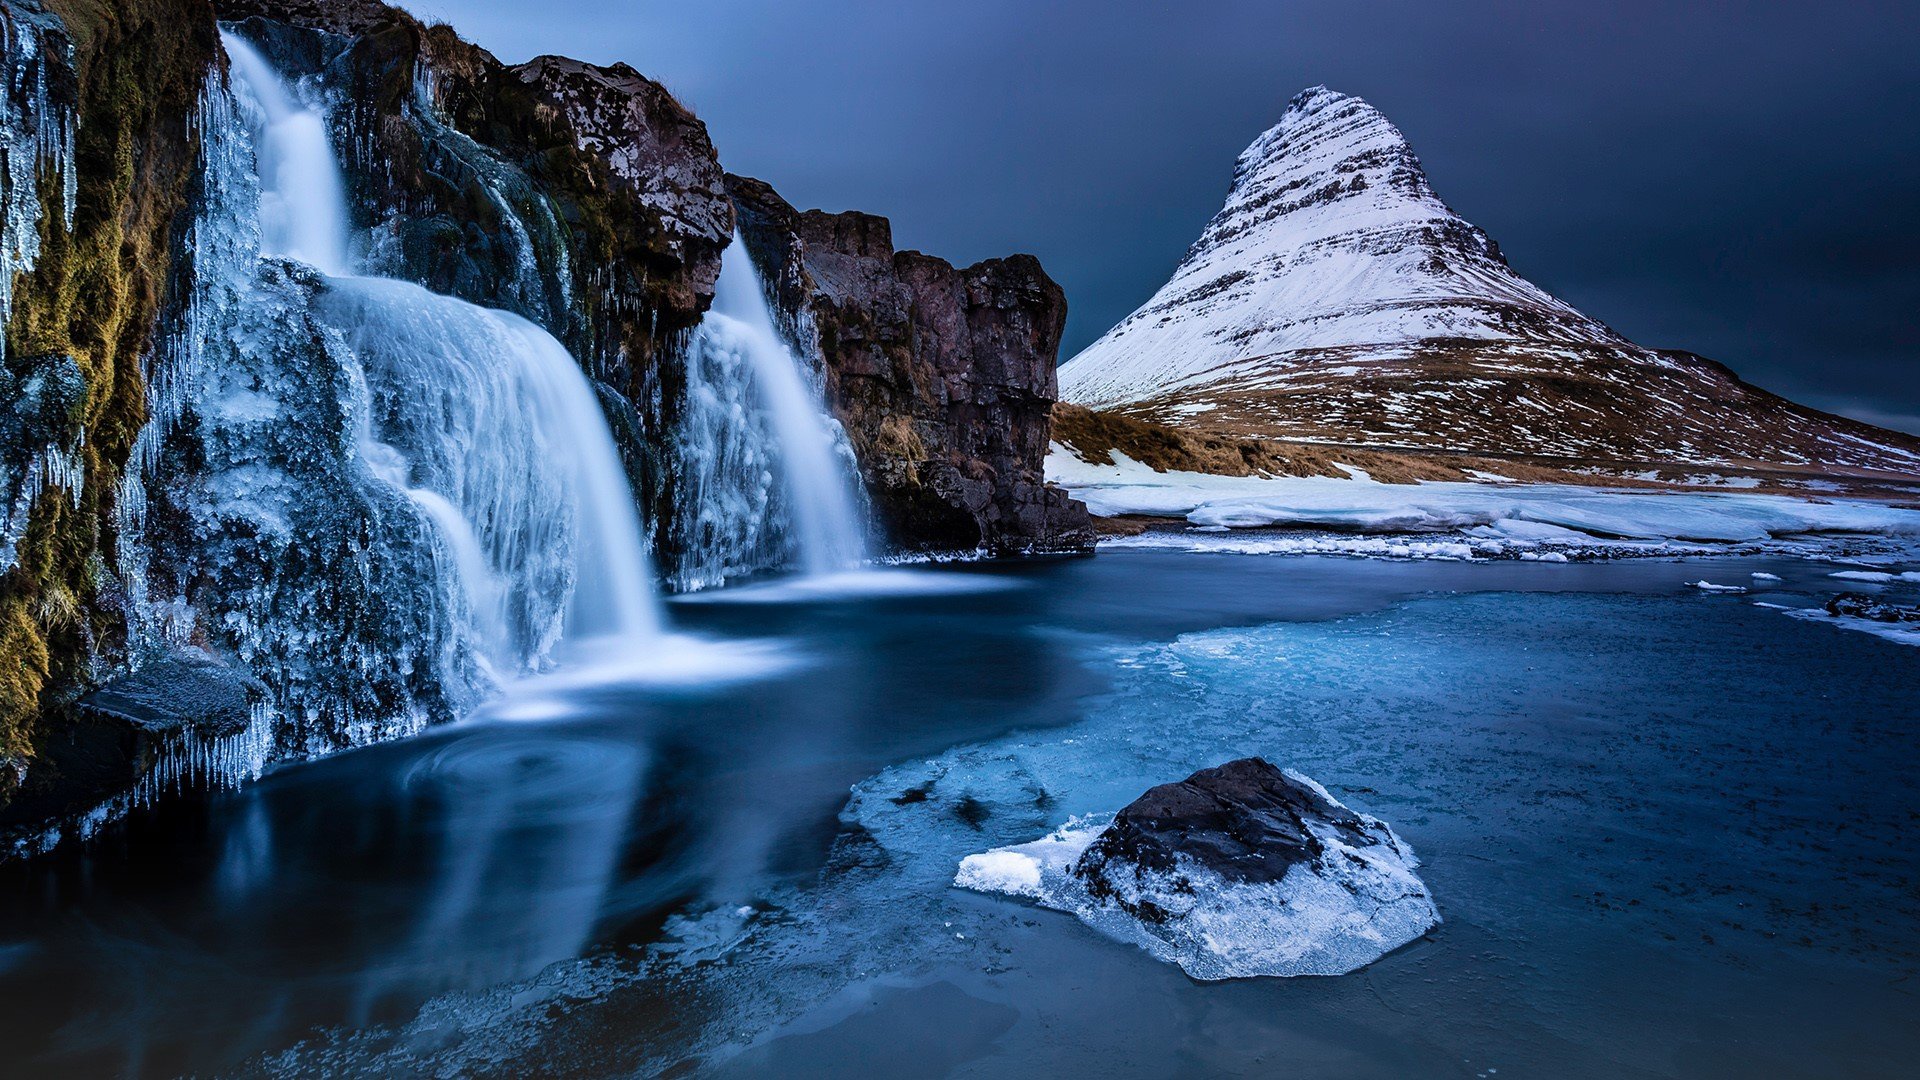 Фото обои экрана блокировки. Скафтафетль Исландия. Рейнисфьяра Исландия. Водопад в горах. Озеро в горах с водопадом.